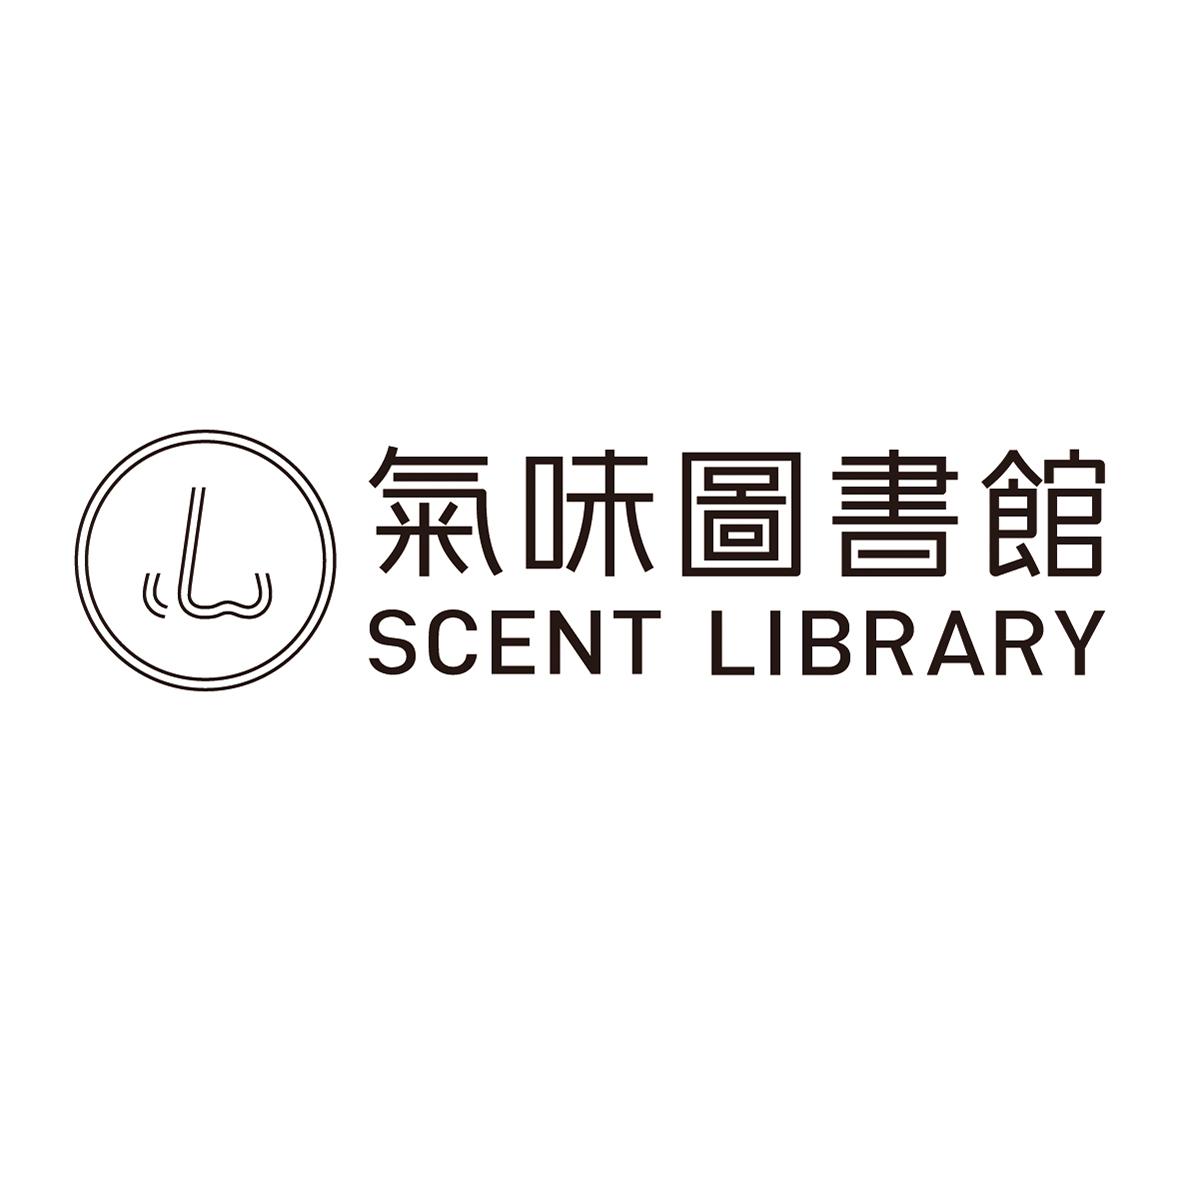 气味图书馆 scent library